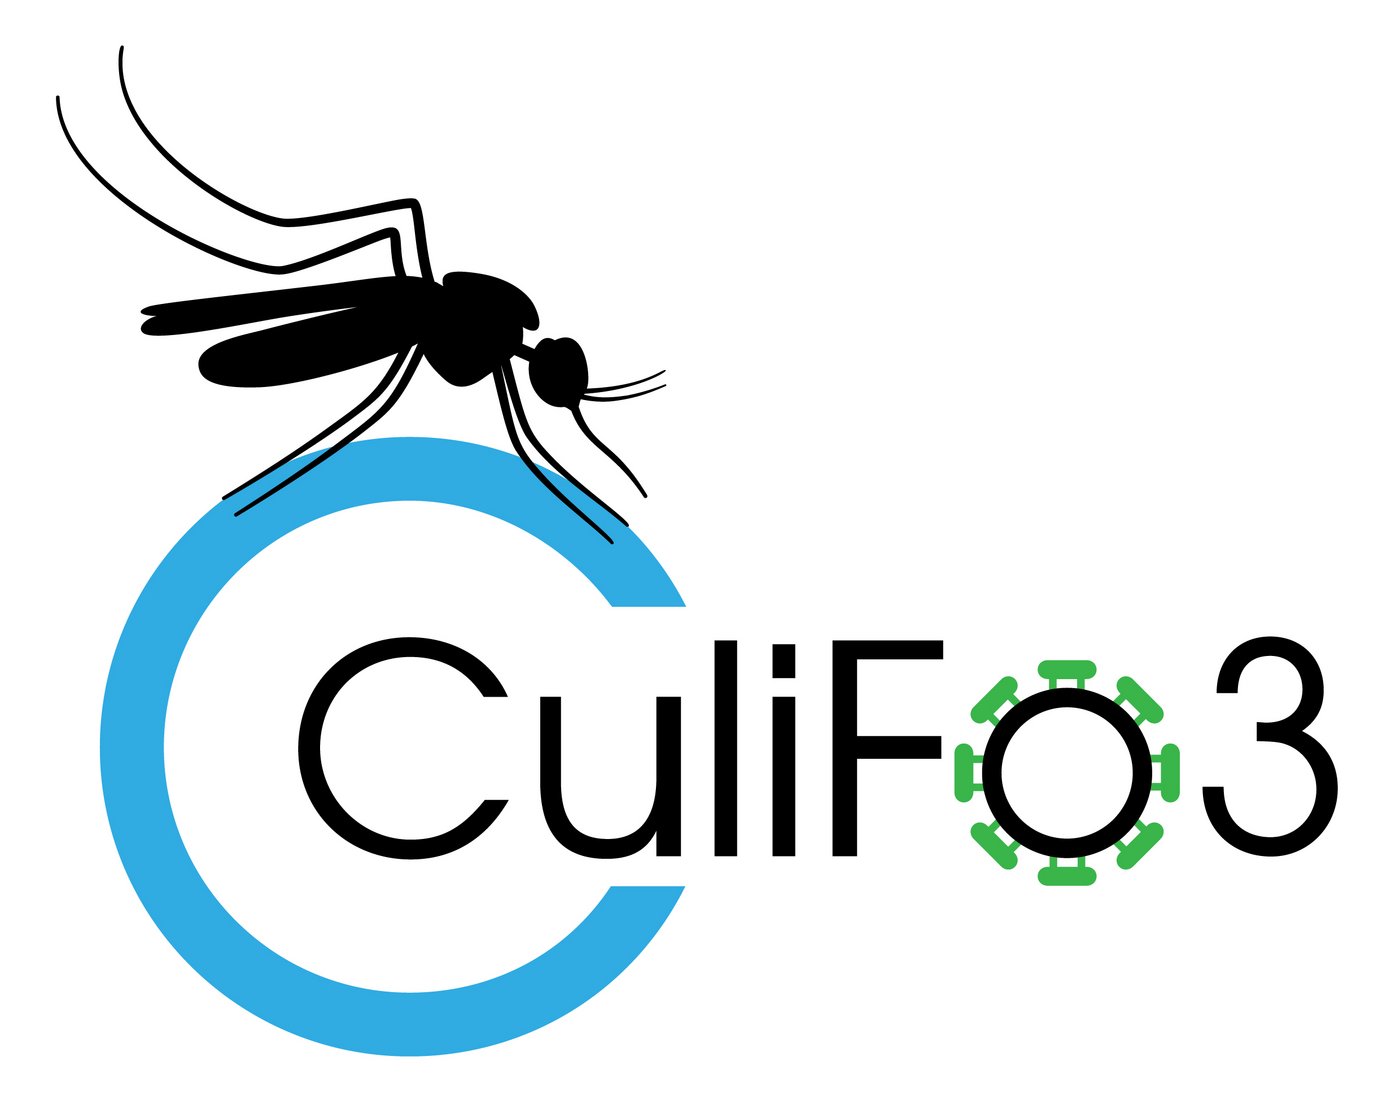 Logo CuliFo3: Auf einem großen hellblauen Kreis sitzt eine Mücke. In der Mitte des Kreises beginnt der Schwarze Schriftzug CuliFo3. Um das "o" sind grüne Viren Spikes zu sehen.